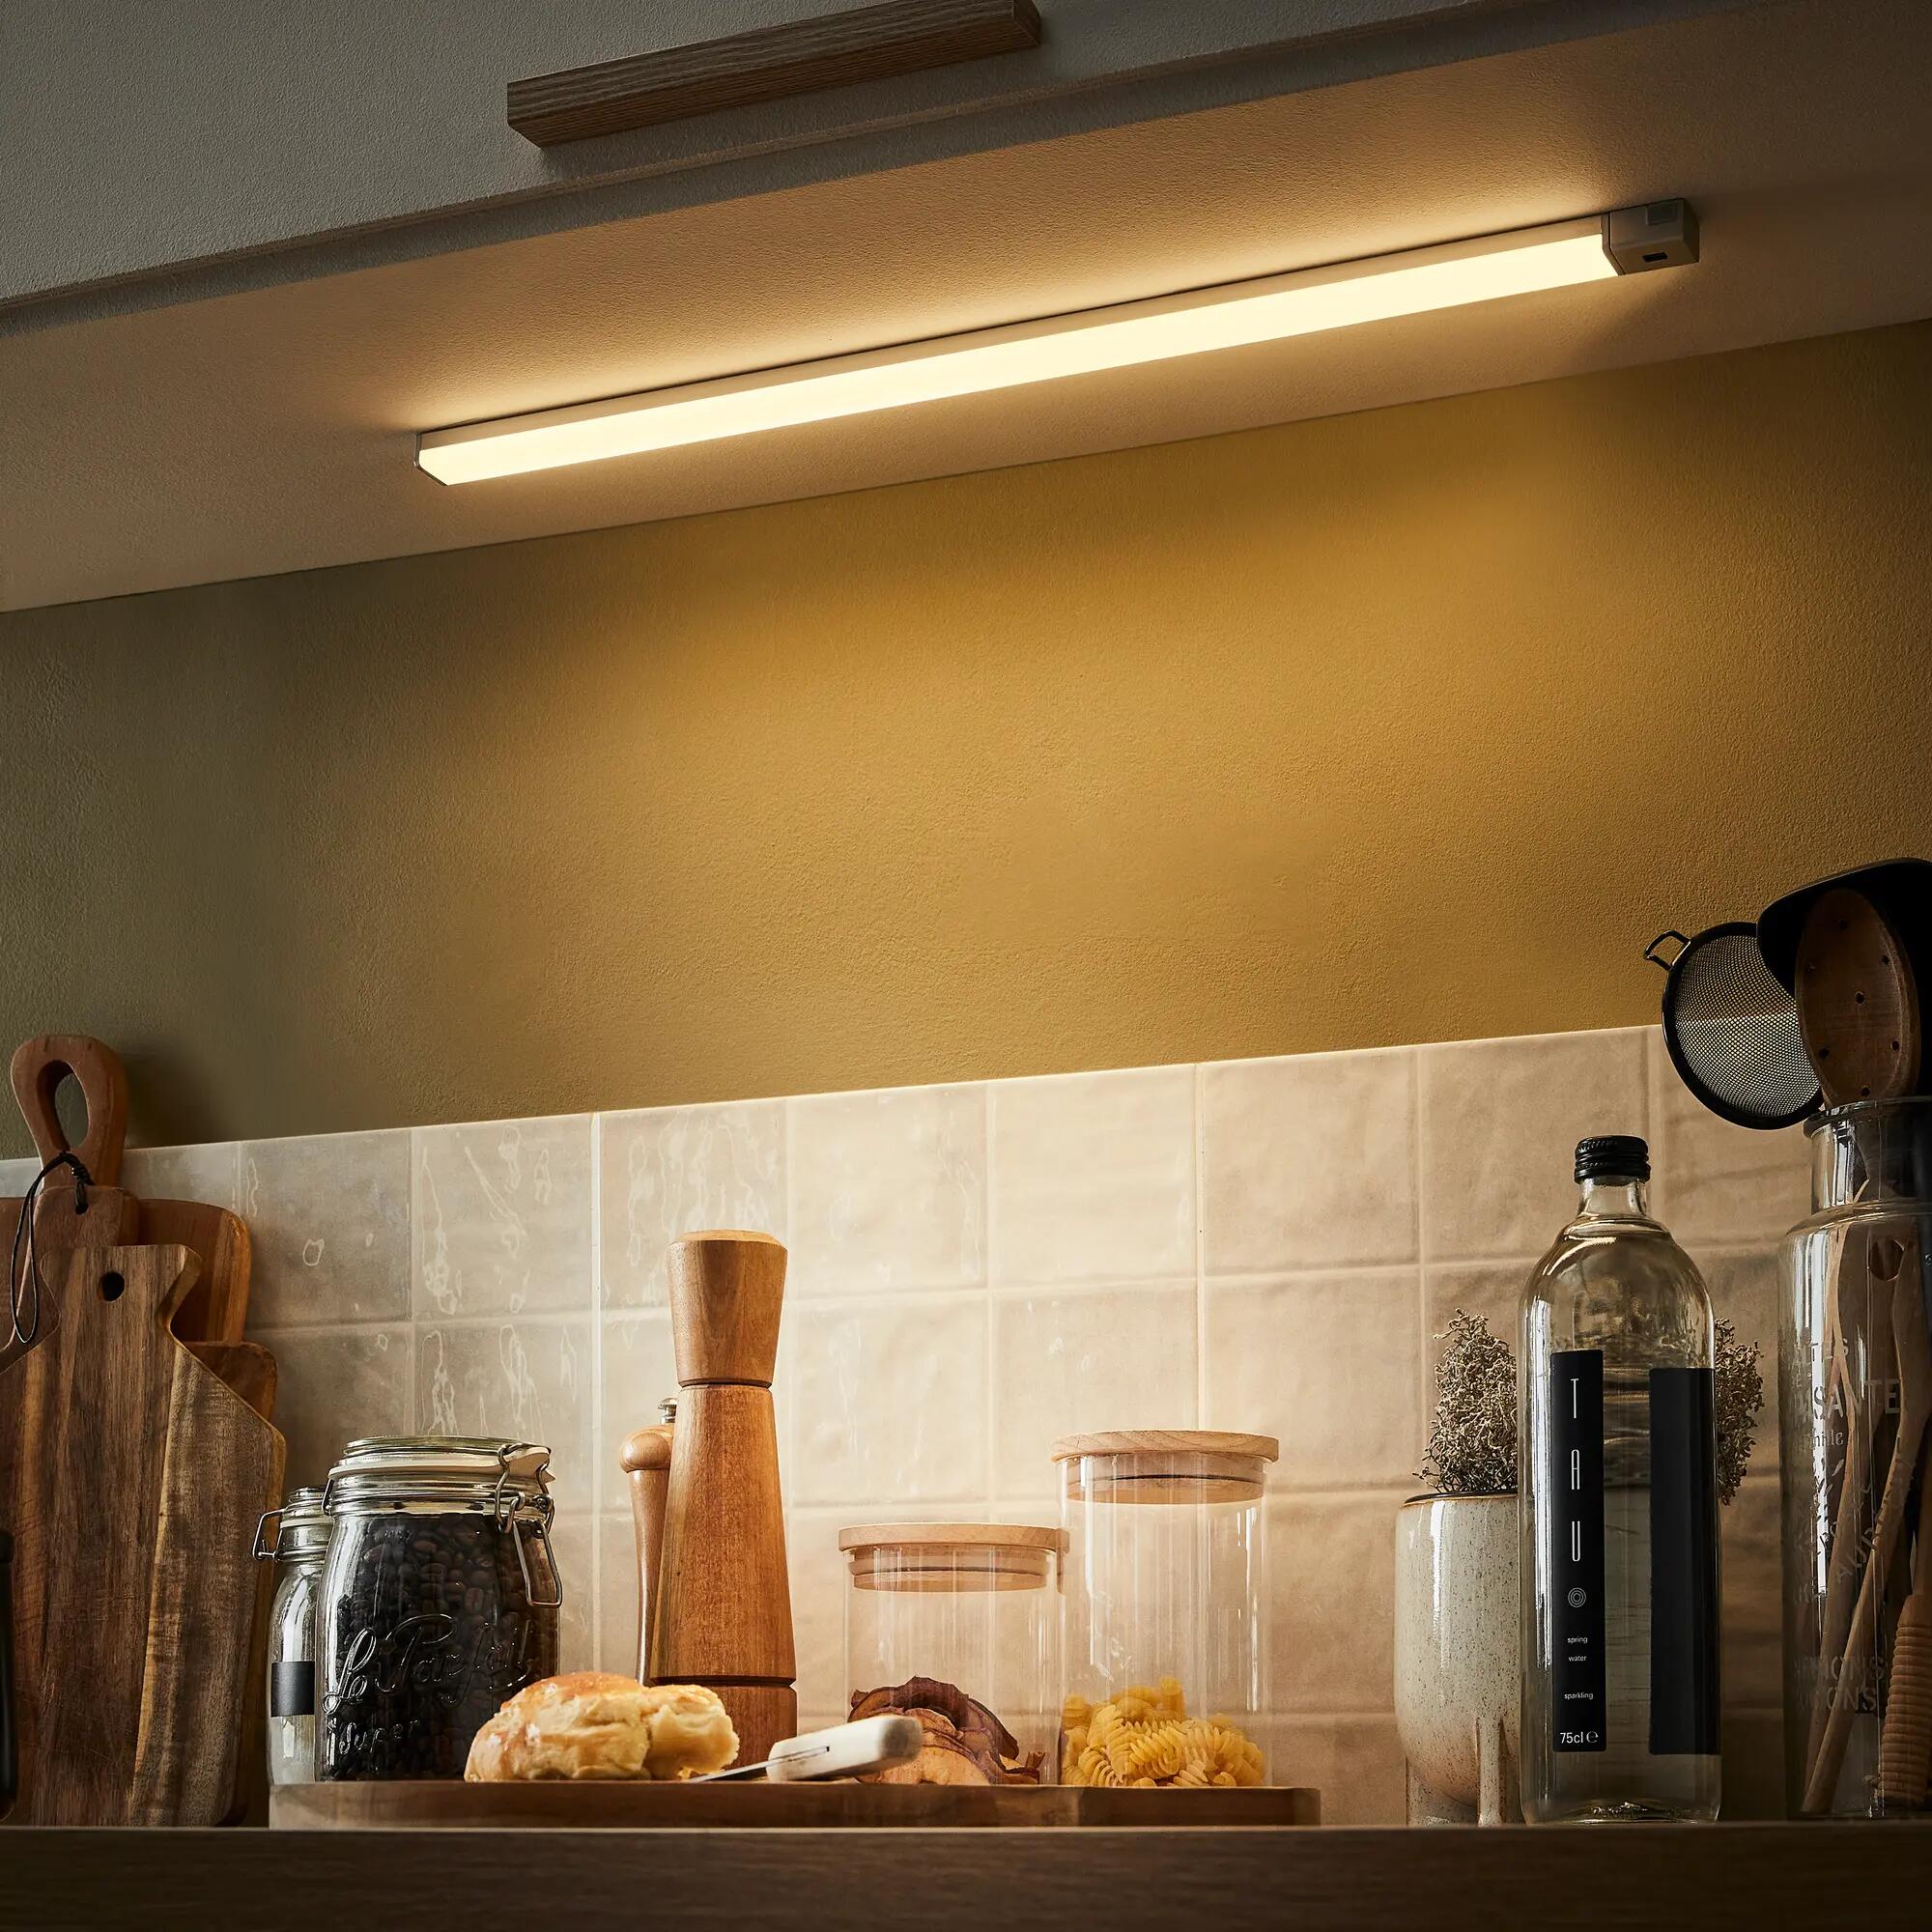 Réglette LED sous meuble cuisine avec Interrupteur Intégré